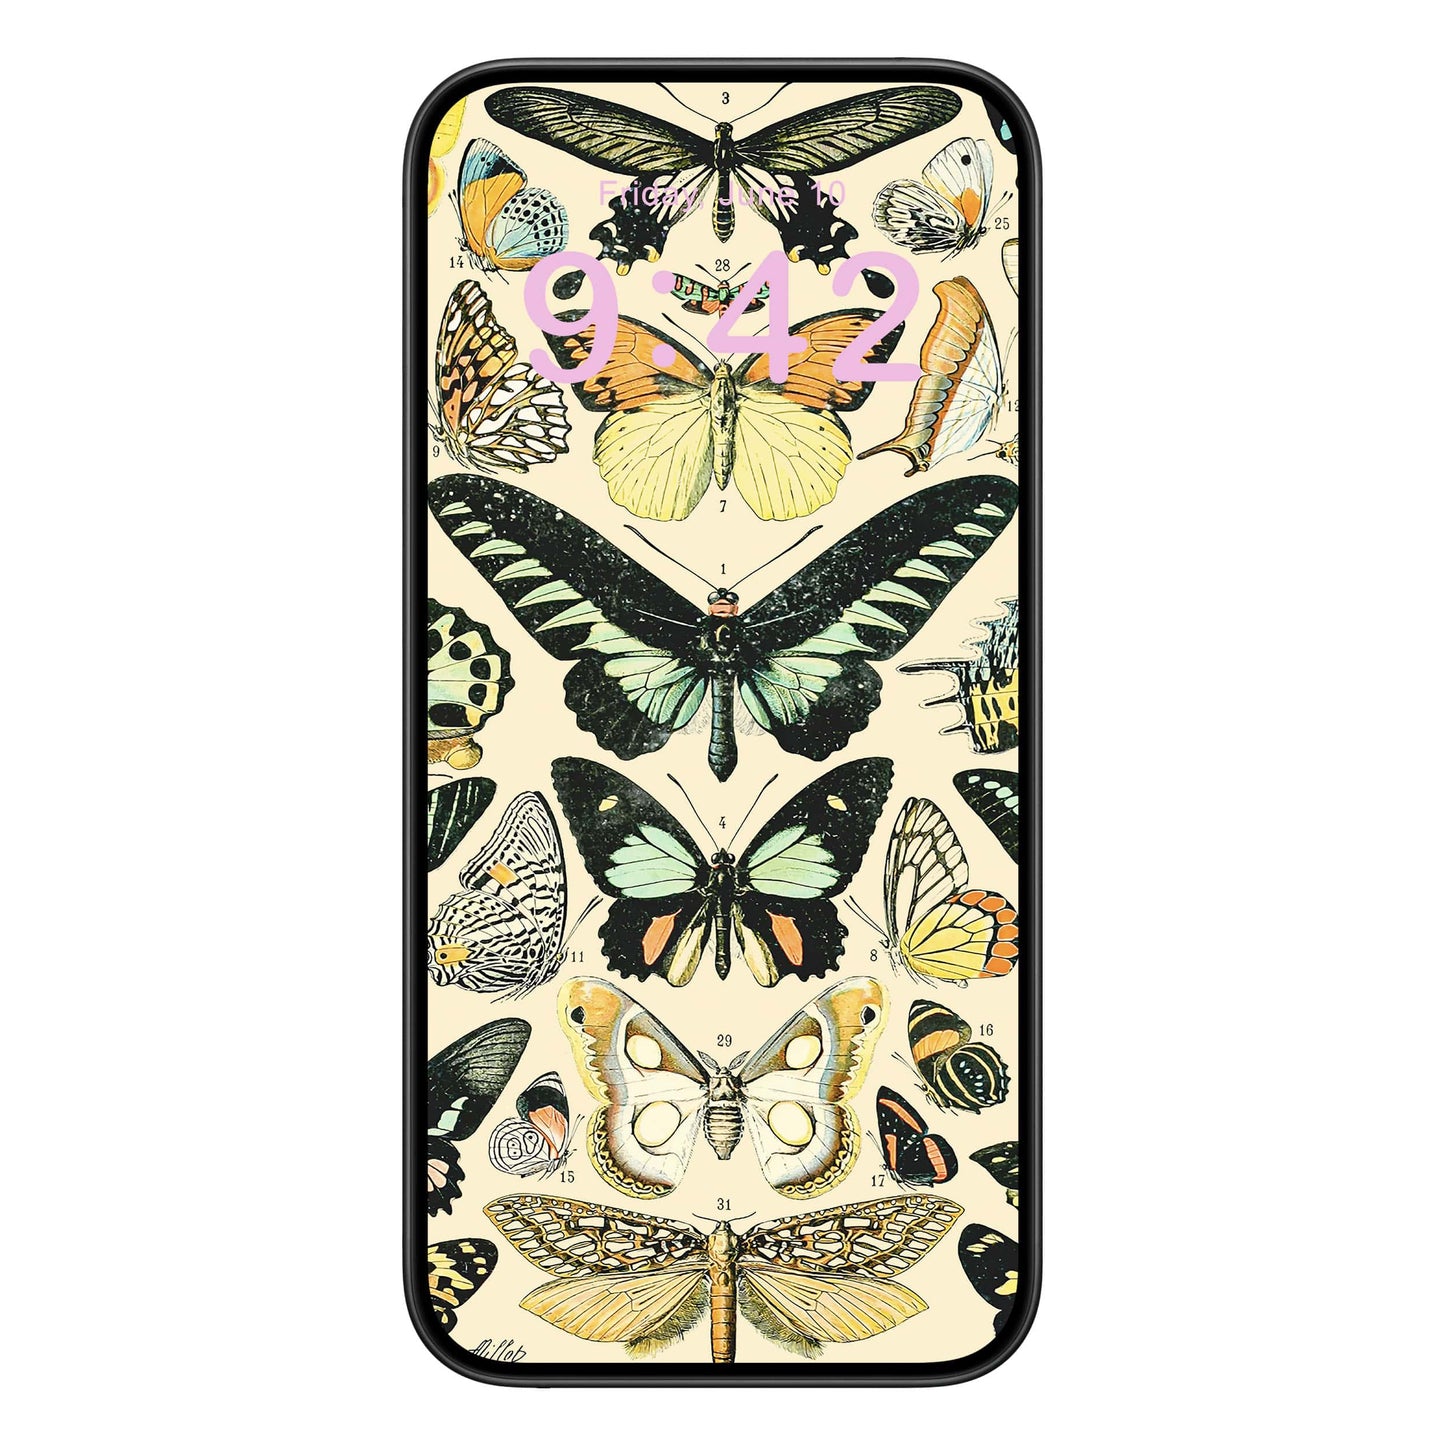 Butterflies and Moths Phone Wallpaper Pink Text